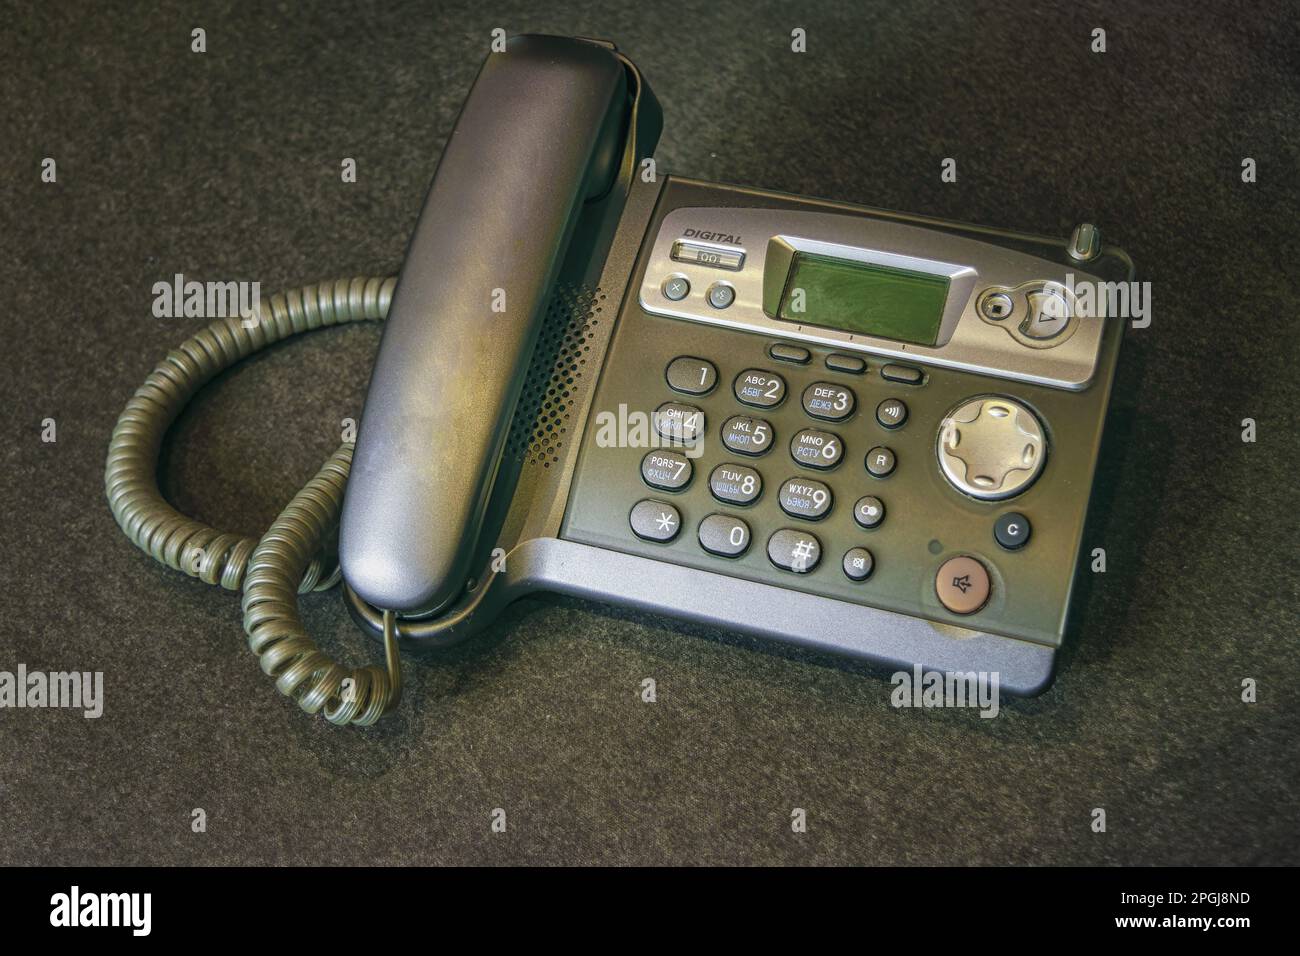 DECT radiotelephone Base station. Dect cordless phone wireless phone,  radiotelephone, radio phone on grey background Stock Photo - Alamy